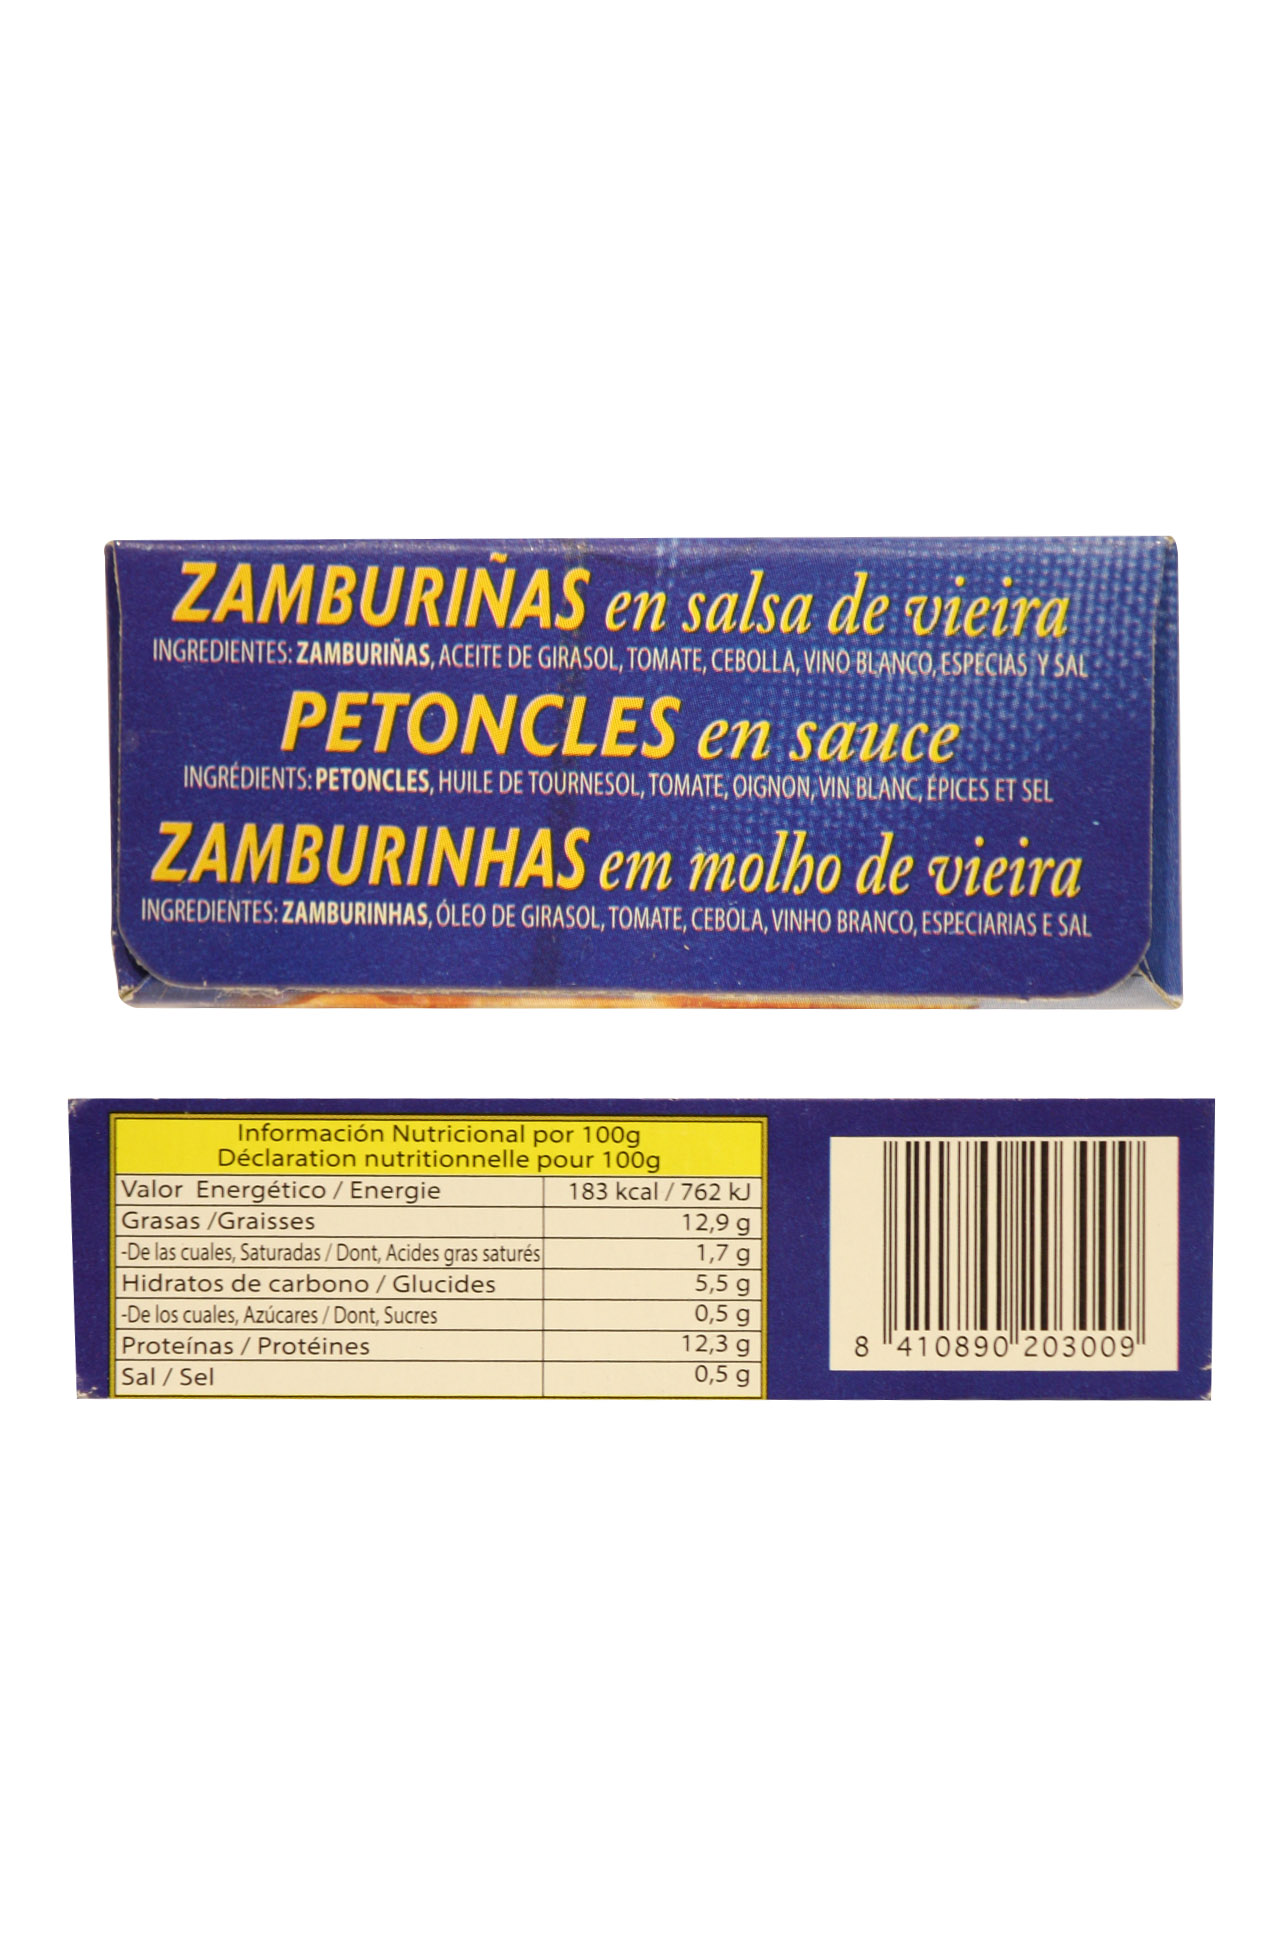 CP04: Zamburiñas en salsa veira